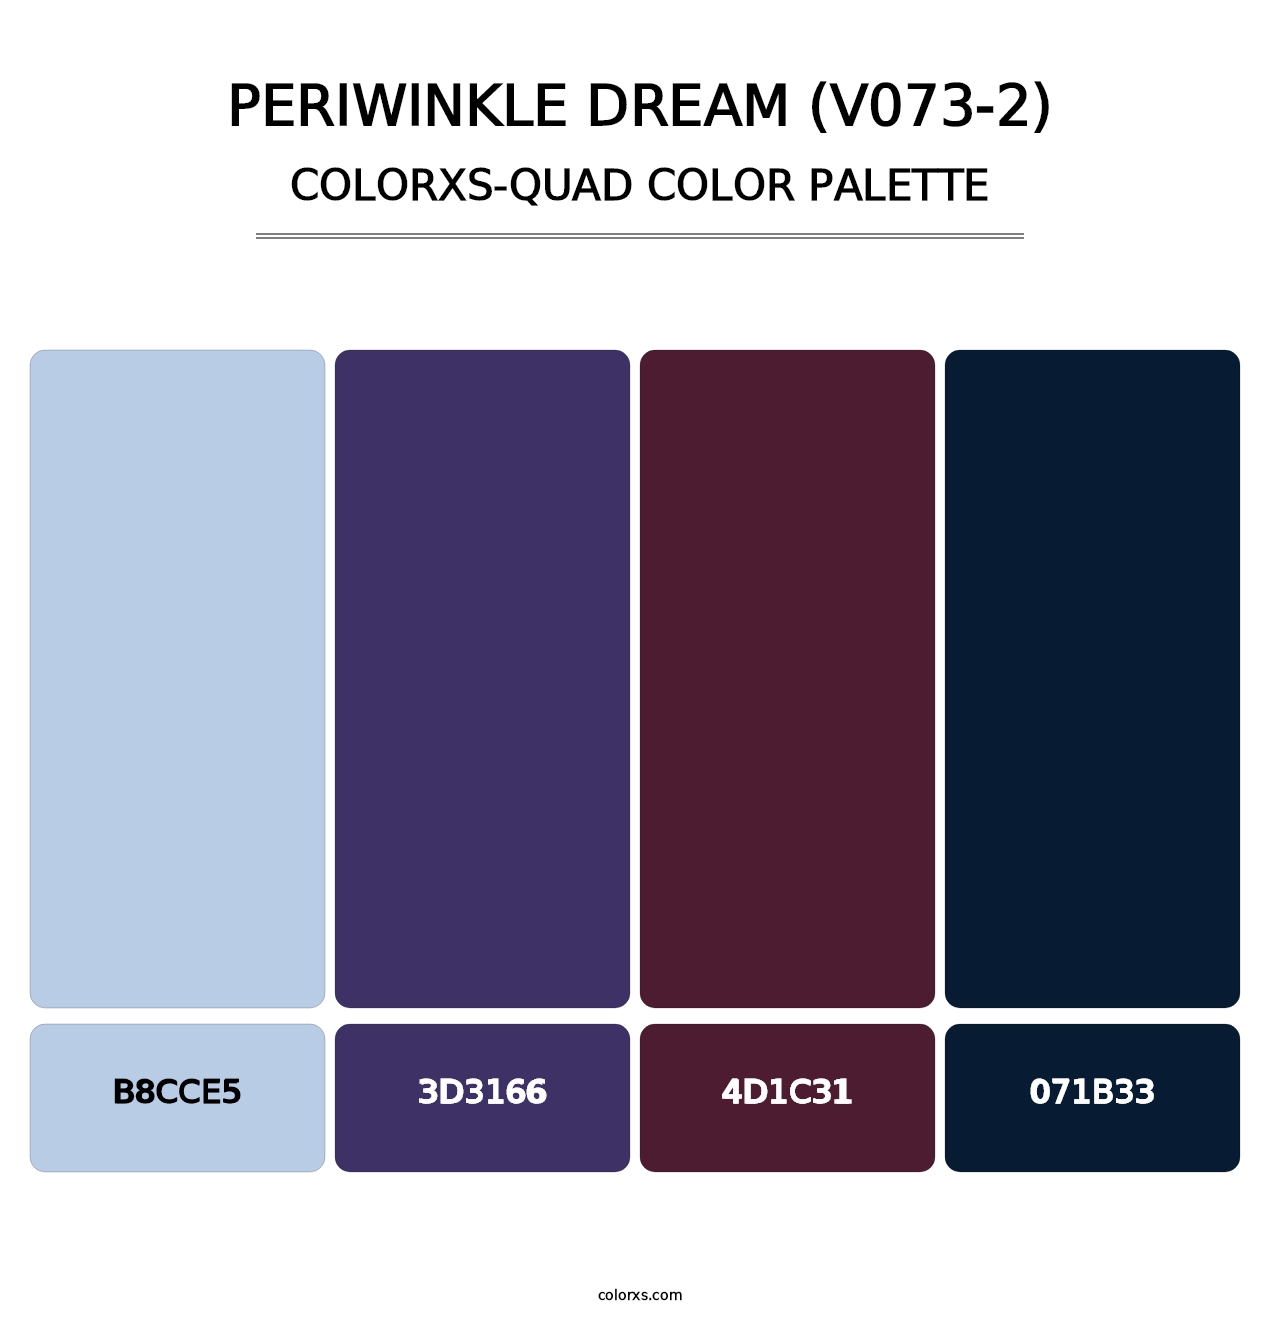 Periwinkle Dream (V073-2) - Colorxs Quad Palette